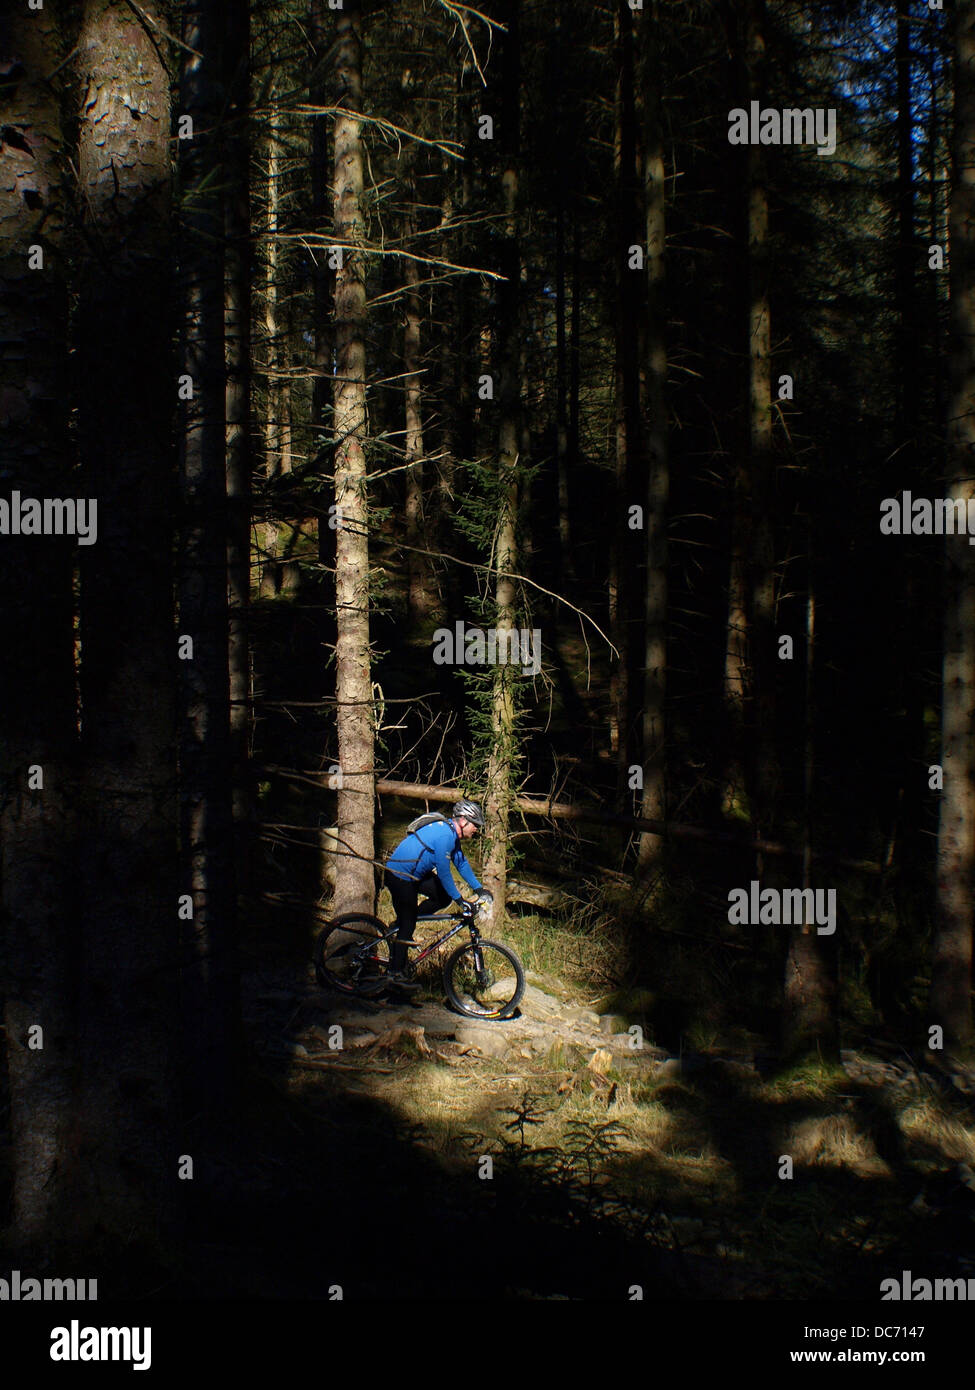 Mountain biker in dark forest Stock Photo